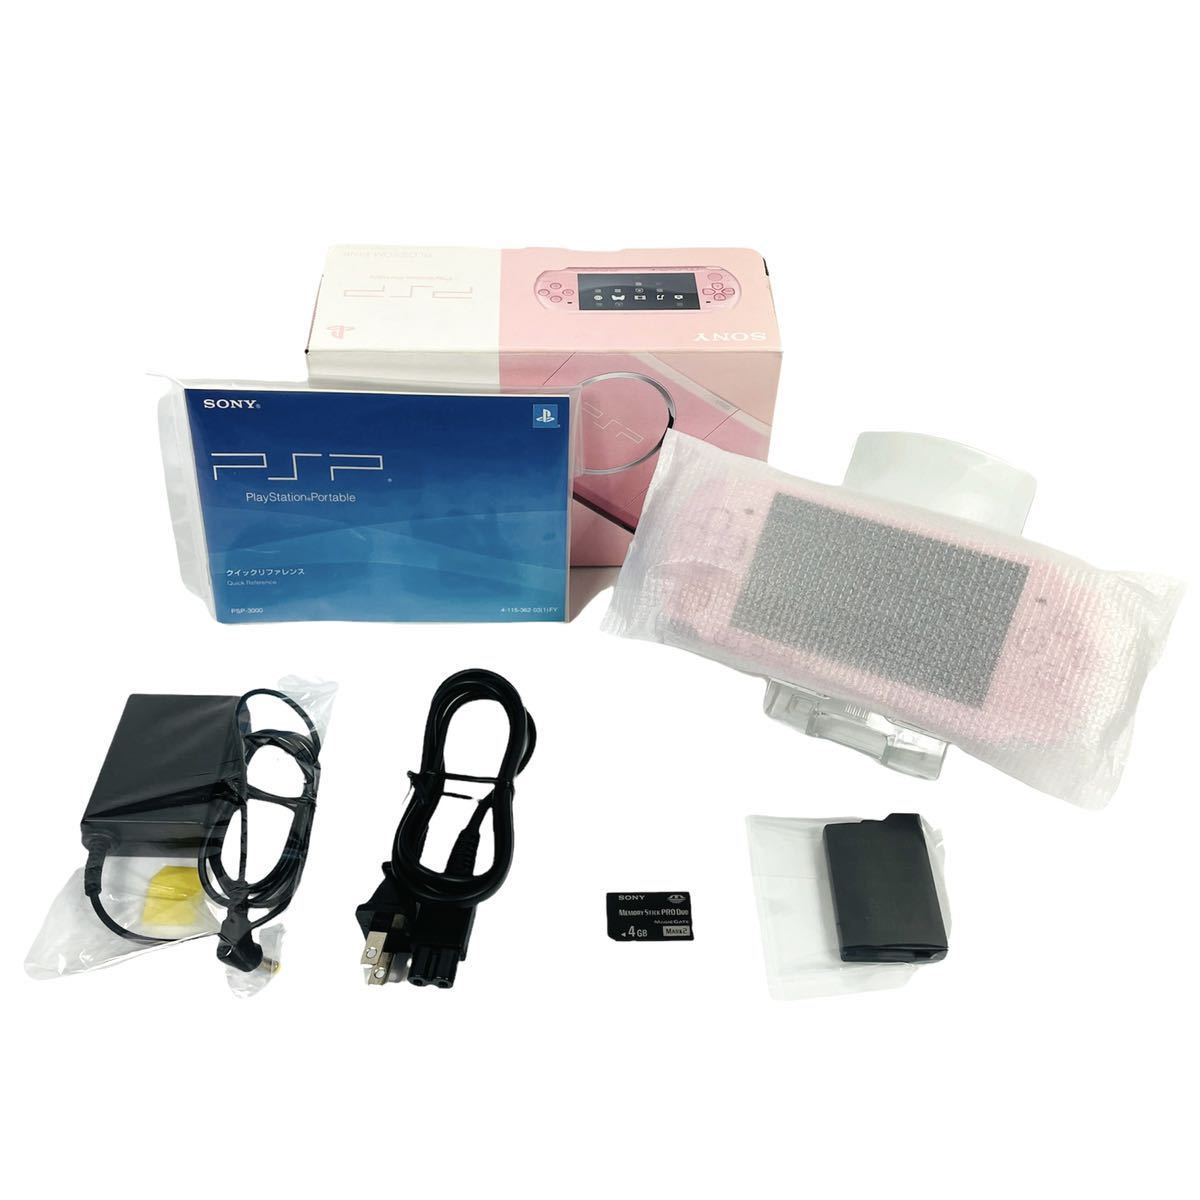 【期間限定お試し価格】 【美品】SONY 純正4GBSDカード付 PSP-3000ZP ピンク ブロッサム ポータブル プレイステーション PSP ソニー PSP3000シリーズ